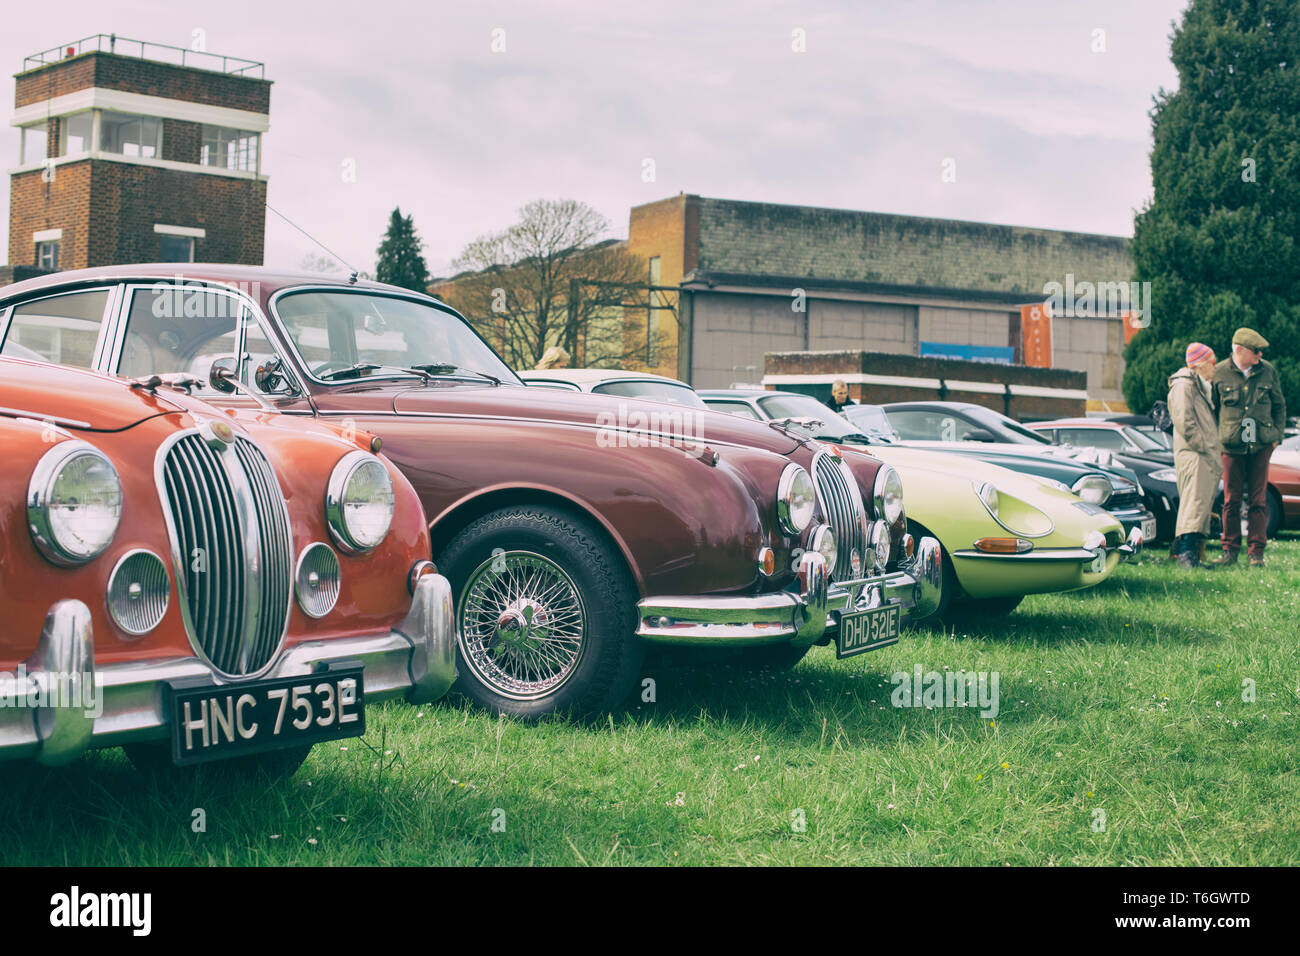 Jaguar Type E et Jaguar Mark 2 voitures à Bicester Heritage Centre 'Drive il Day'. Bicester, Oxfordshire, Angleterre. Vintage filtre appliqué Banque D'Images